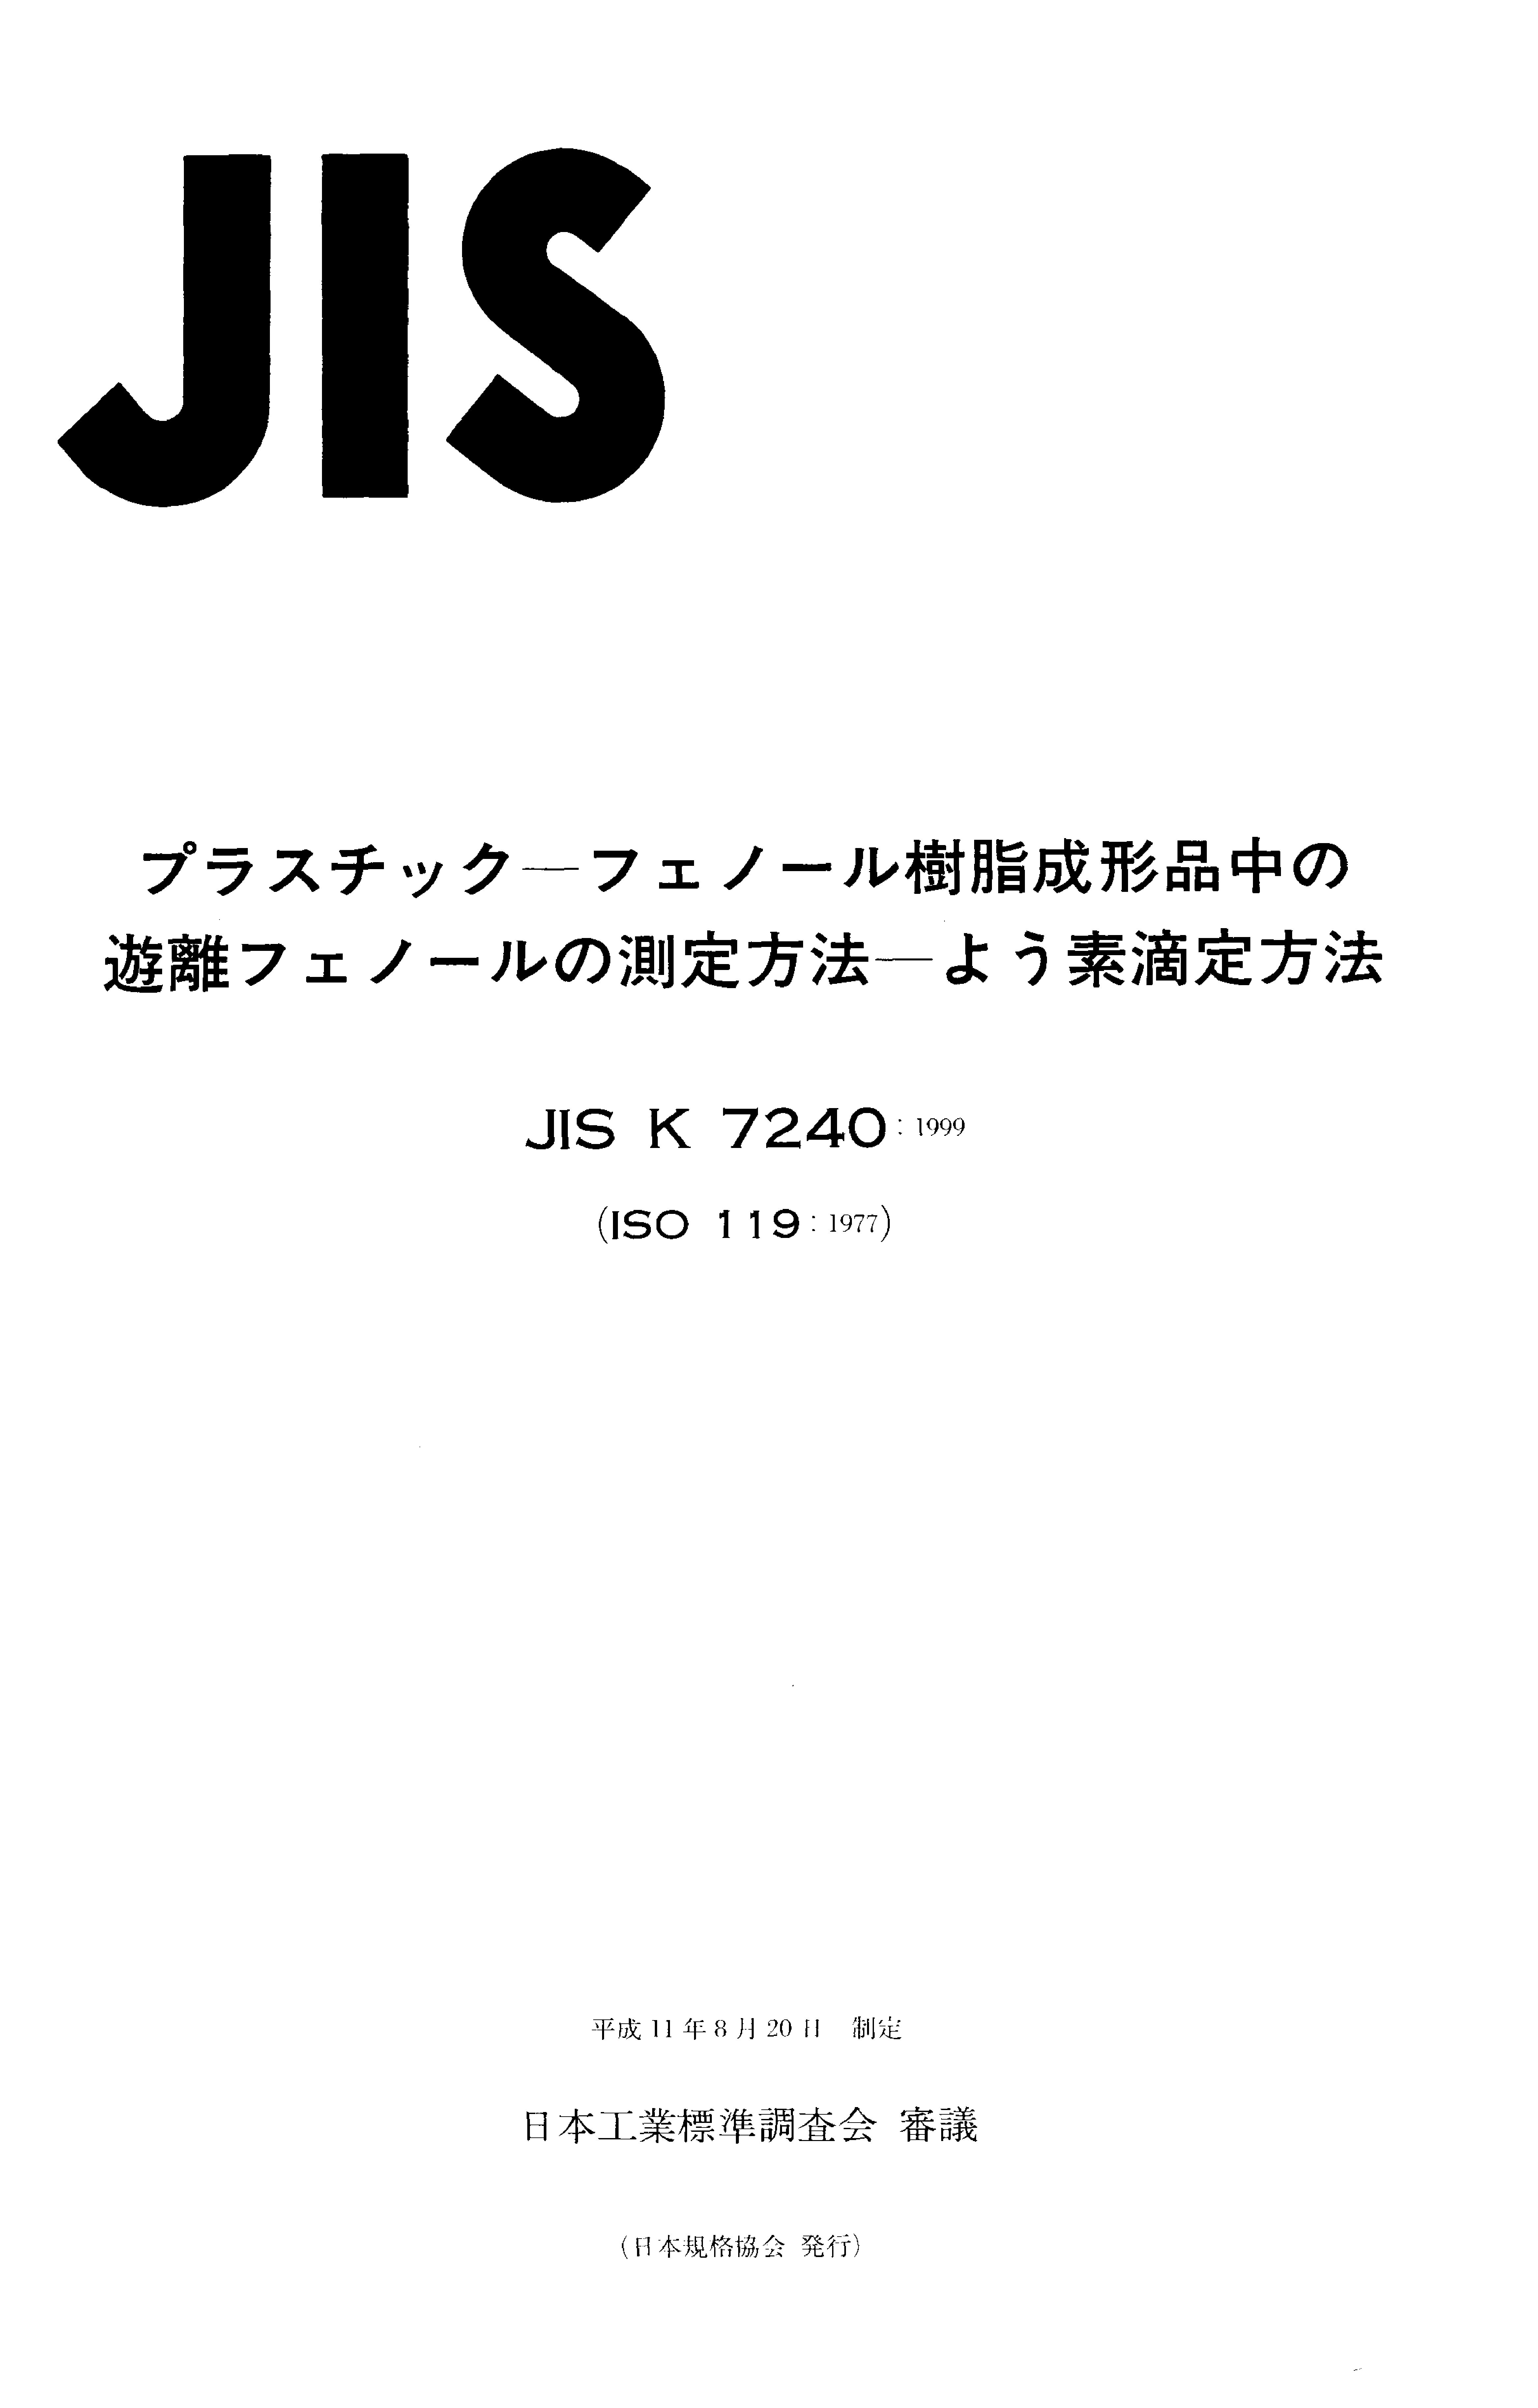 JIS K 7240:1999